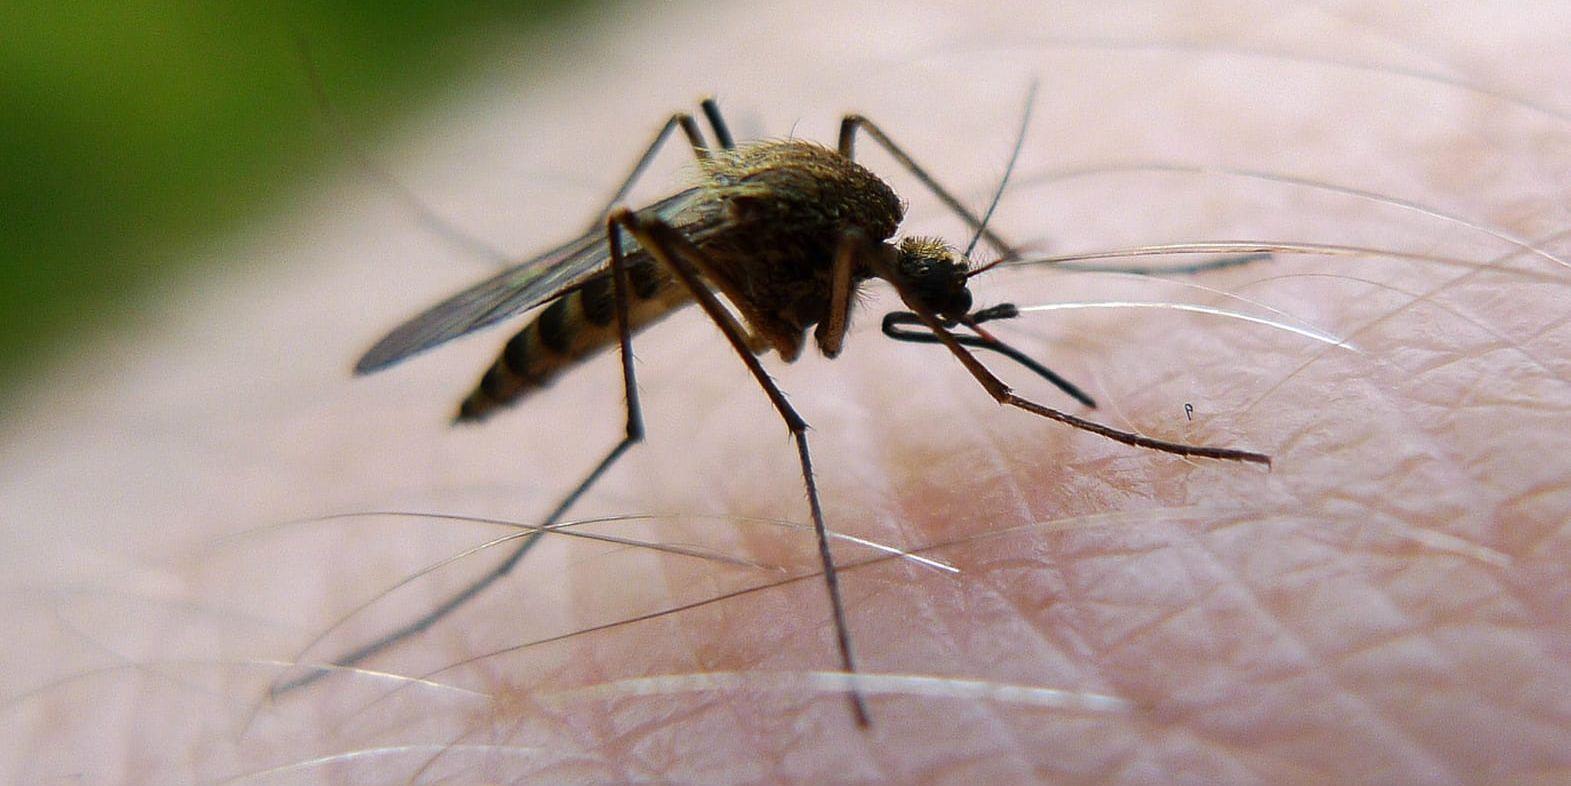 Naturvårdsverket meddelar att man inte har budgeterat för myggbekämpning i år. Arkivbild.